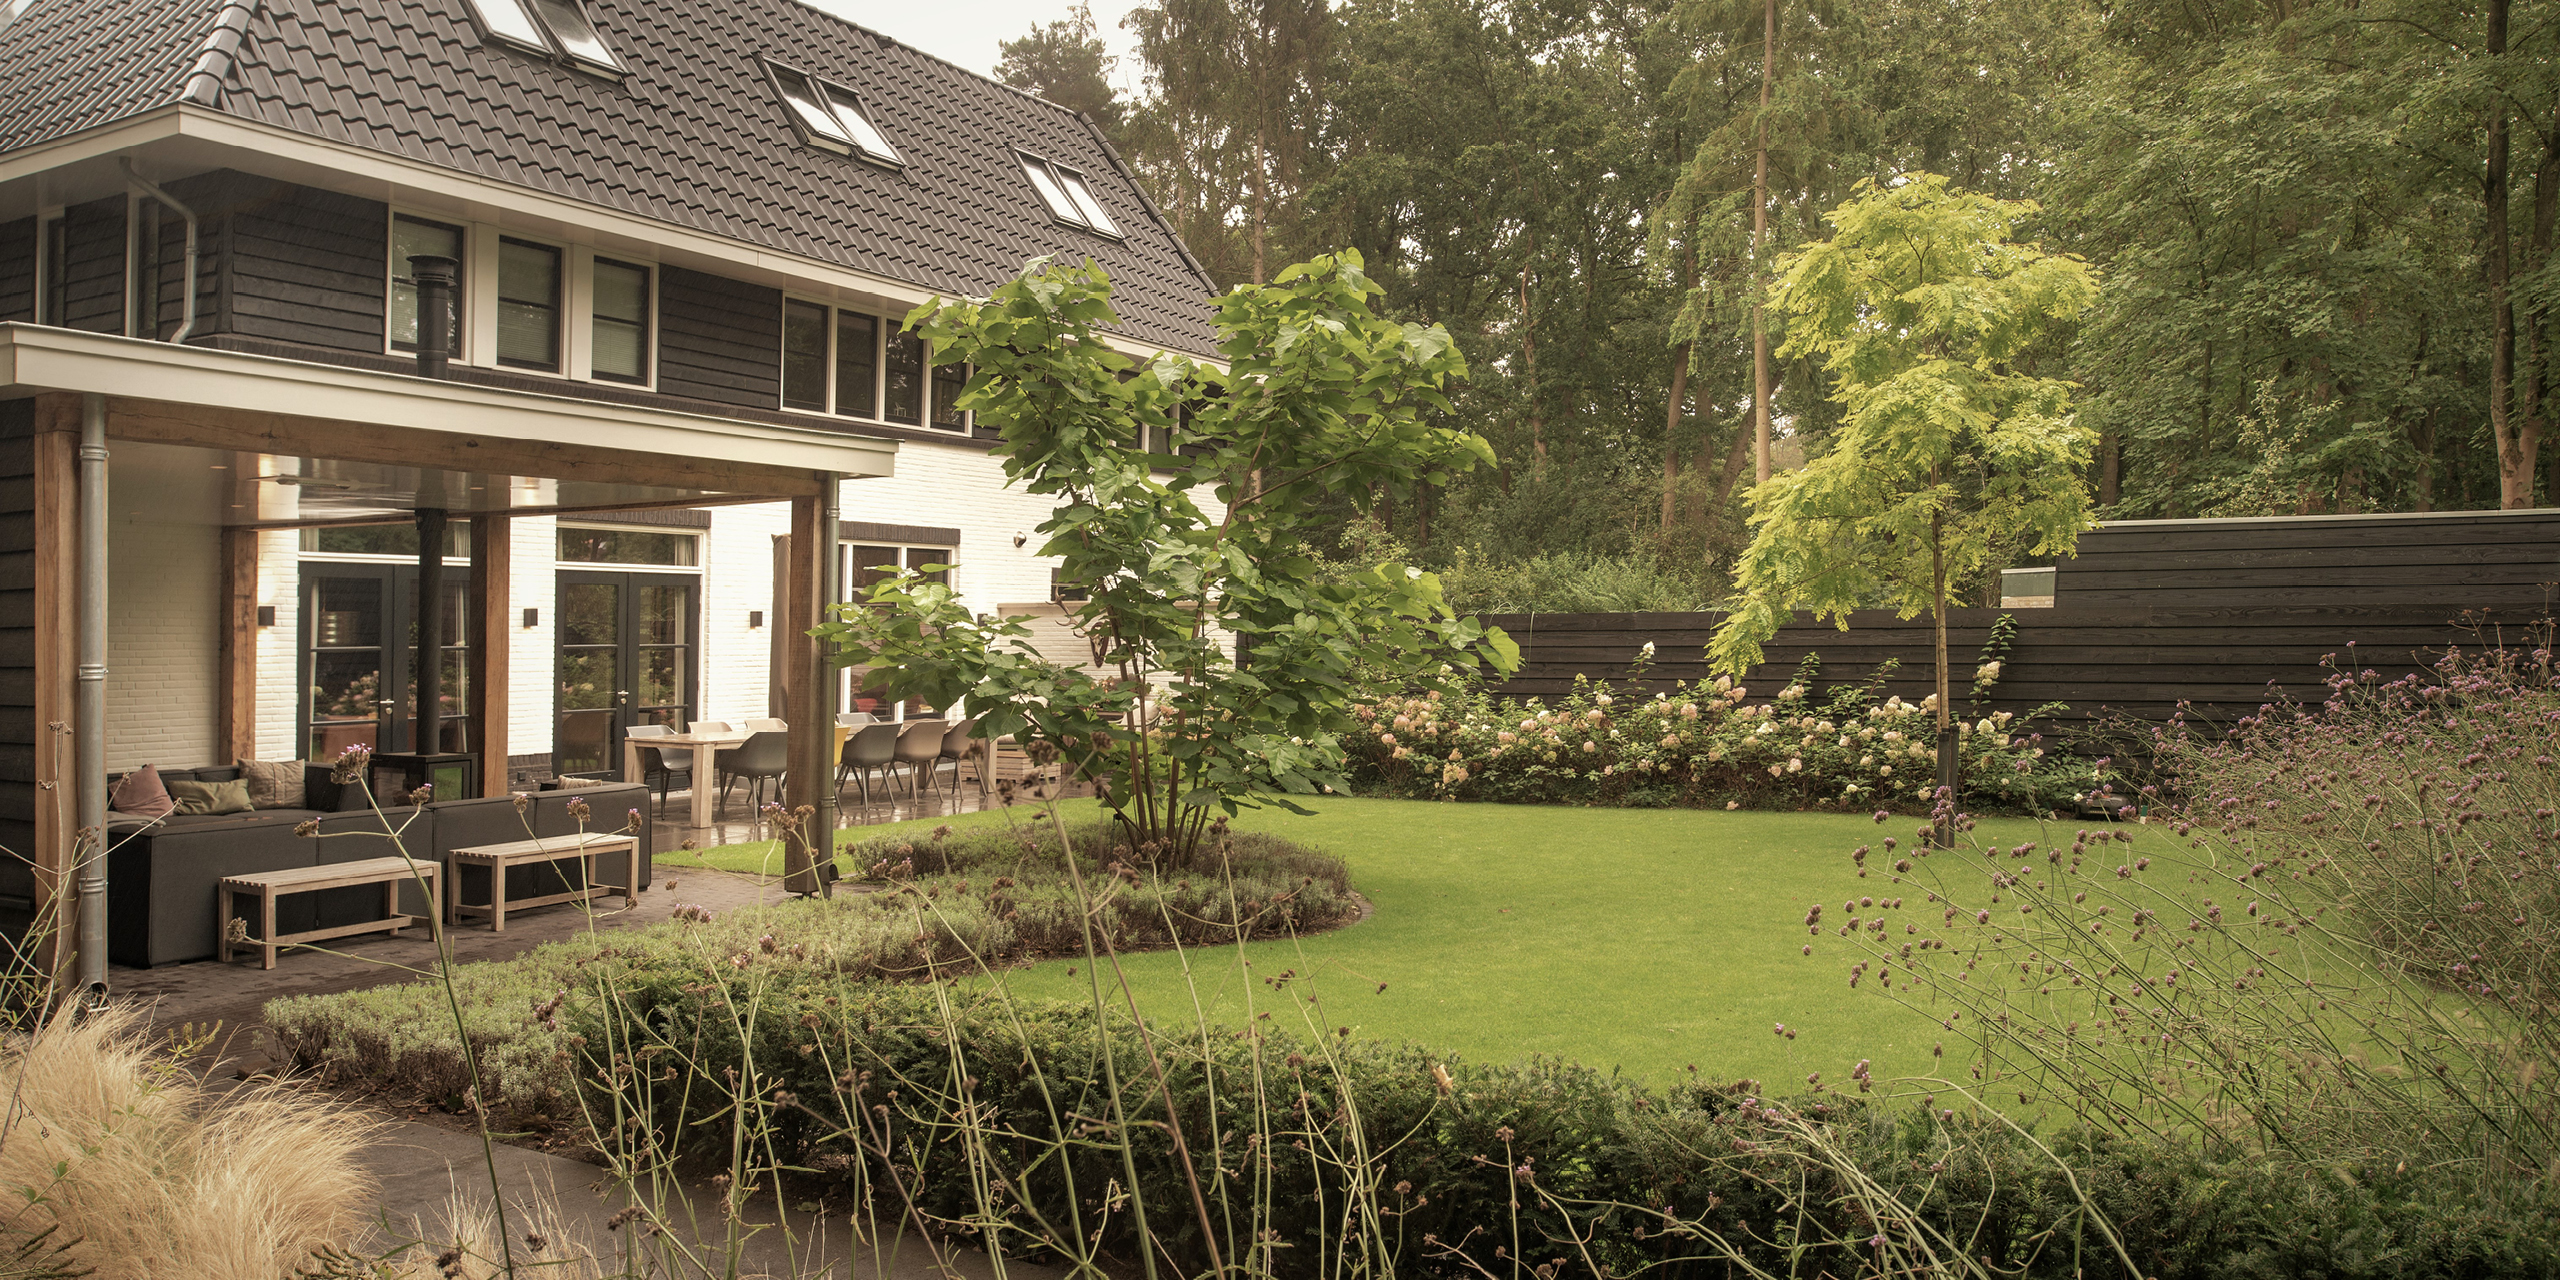 Buytengewoon tuin in Zeist met gazon, veranda en zithoek.